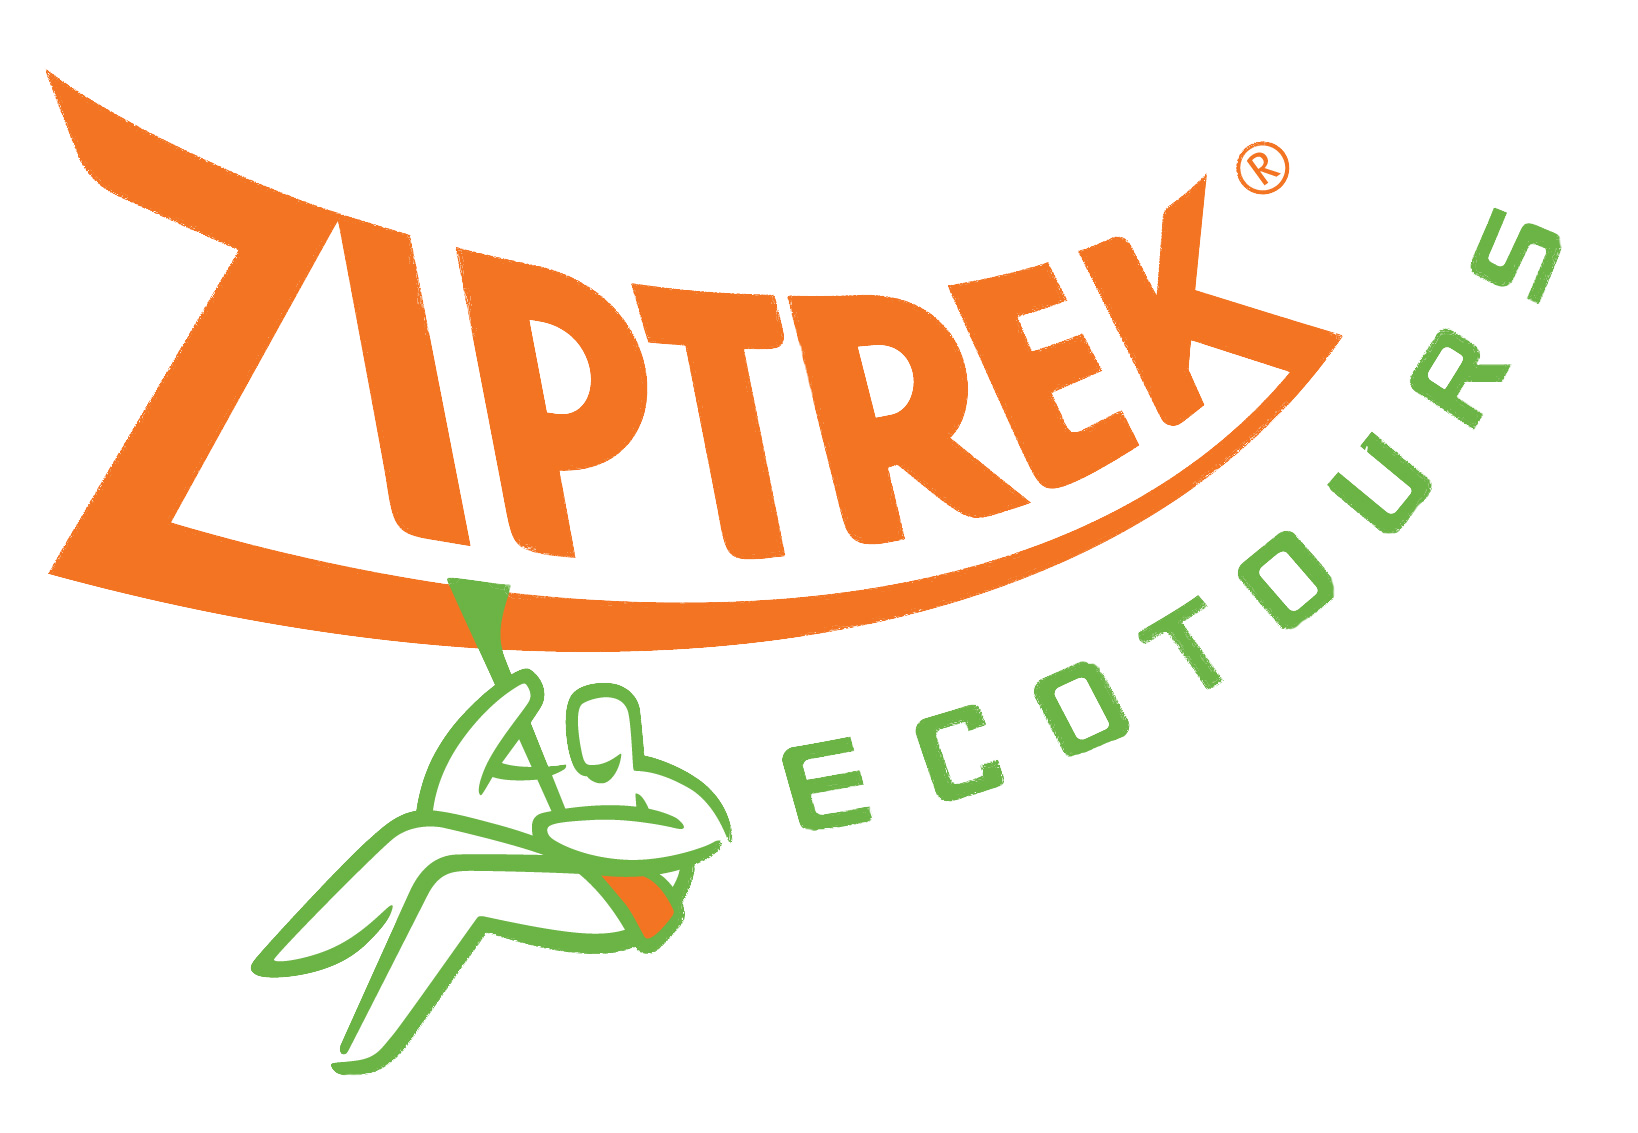 Ziptrek Ecotours Logo RGB Large